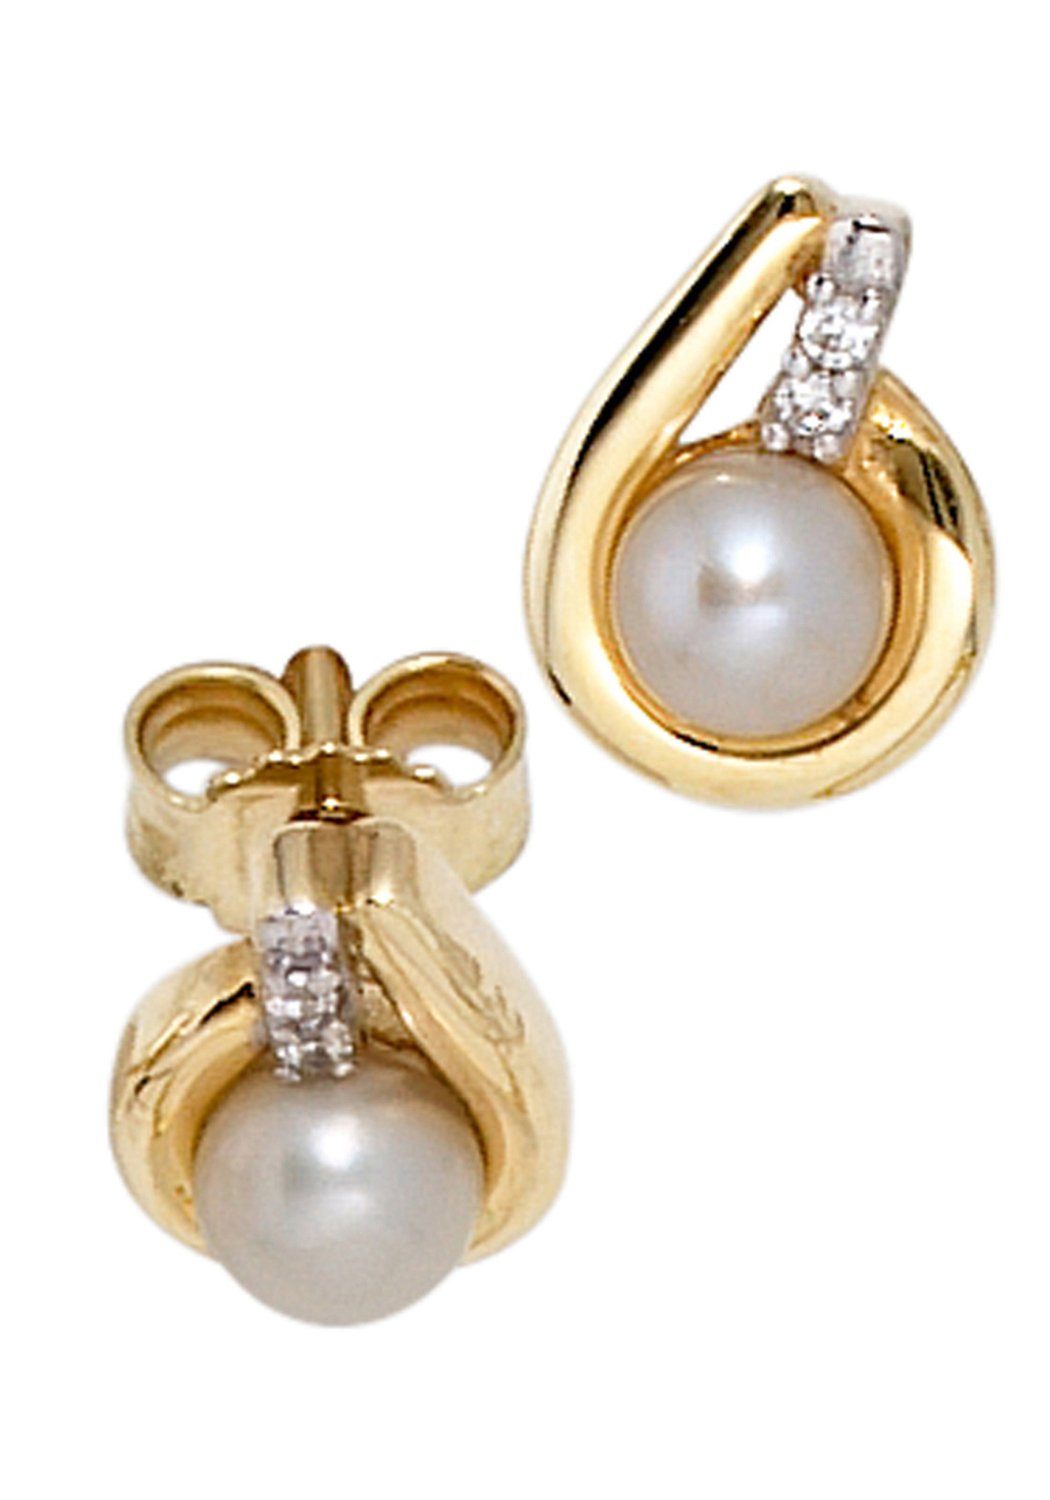 JOBO Perlenohrringe Ohrringe in Bicoloroptik, 333 Gold mit Süßwasser Perlen und 4 Zirkonia